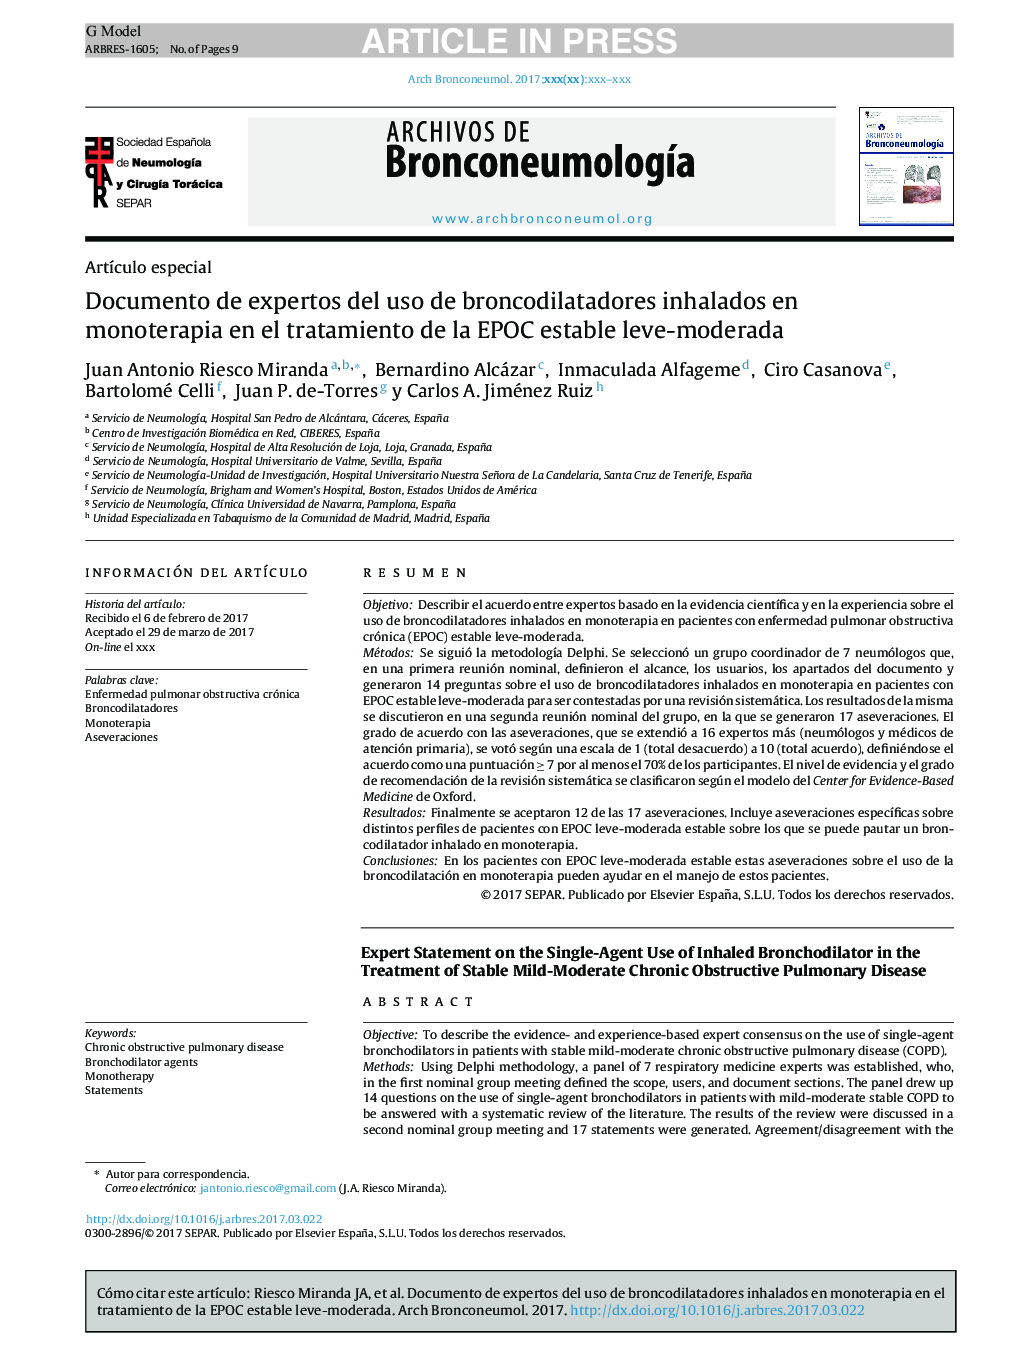 Documento de expertos del uso de broncodilatadores inhalados en monoterapia en el tratamiento de la EPOC estable leve-moderada